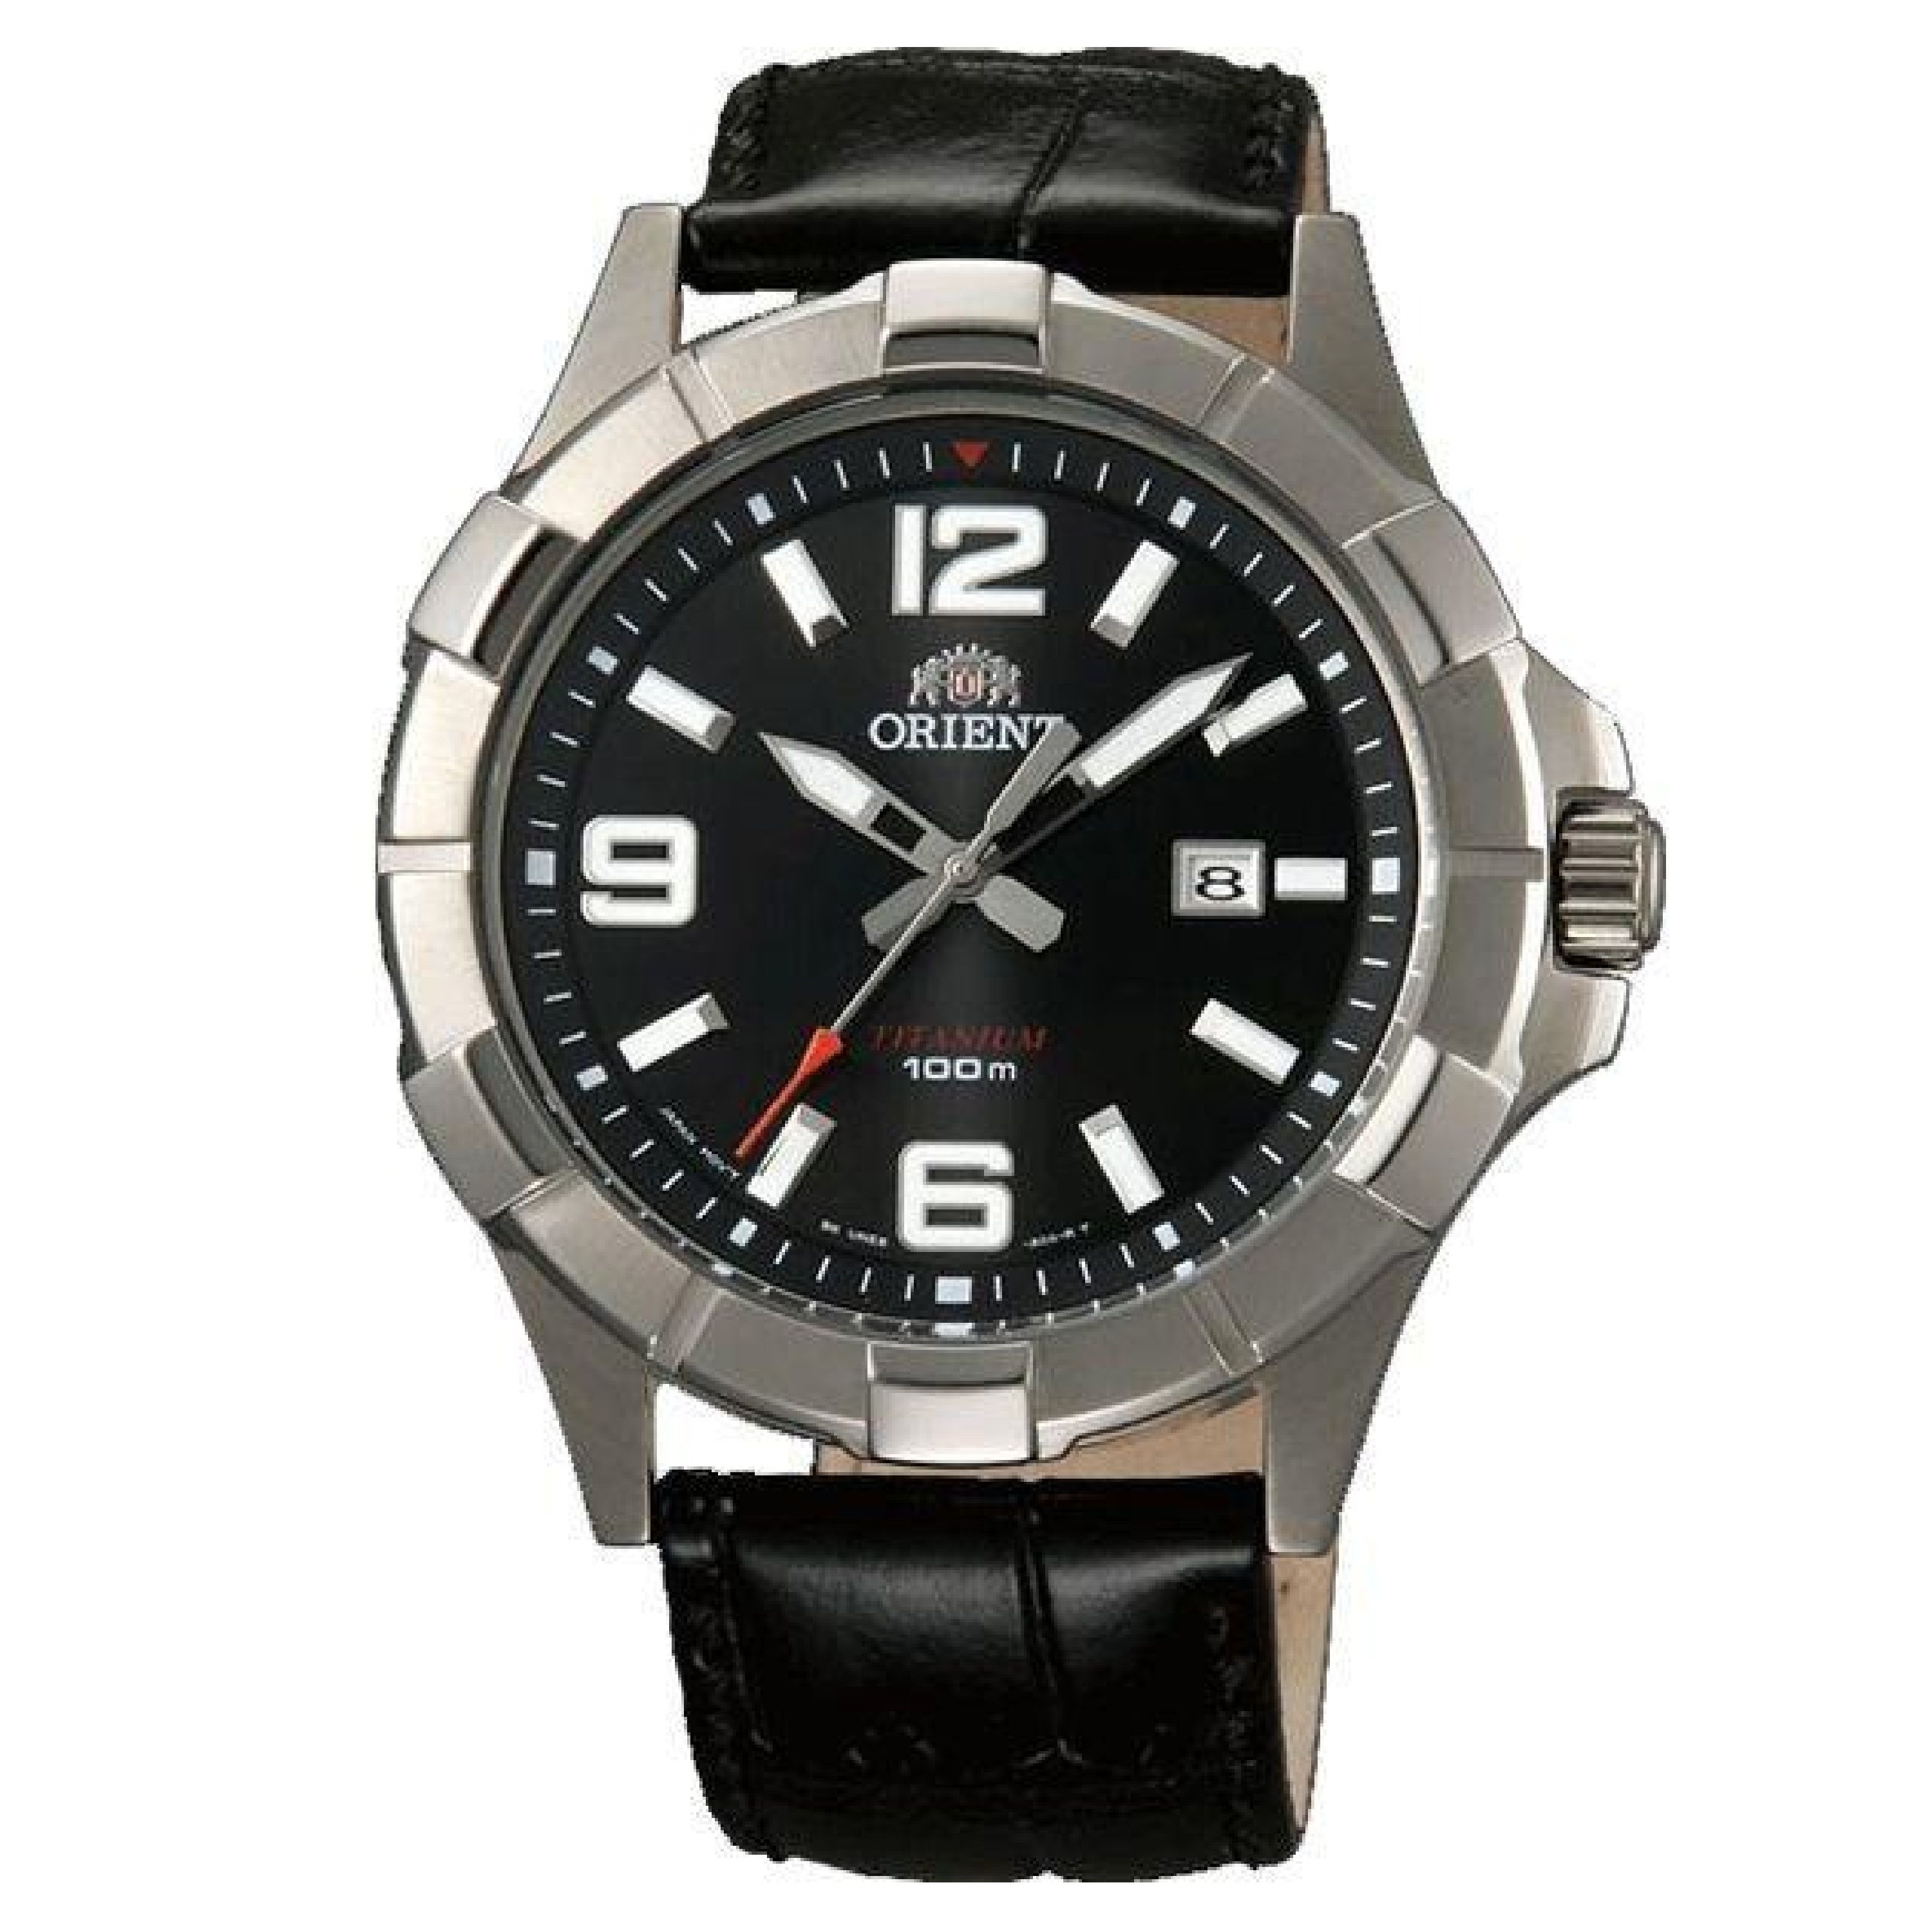 Купить часы ориент в спб. Часы Ориент Титаниум 100м. Часы Orient sporty Quartz. Orient une6002b. Orient sporty fune0002b.